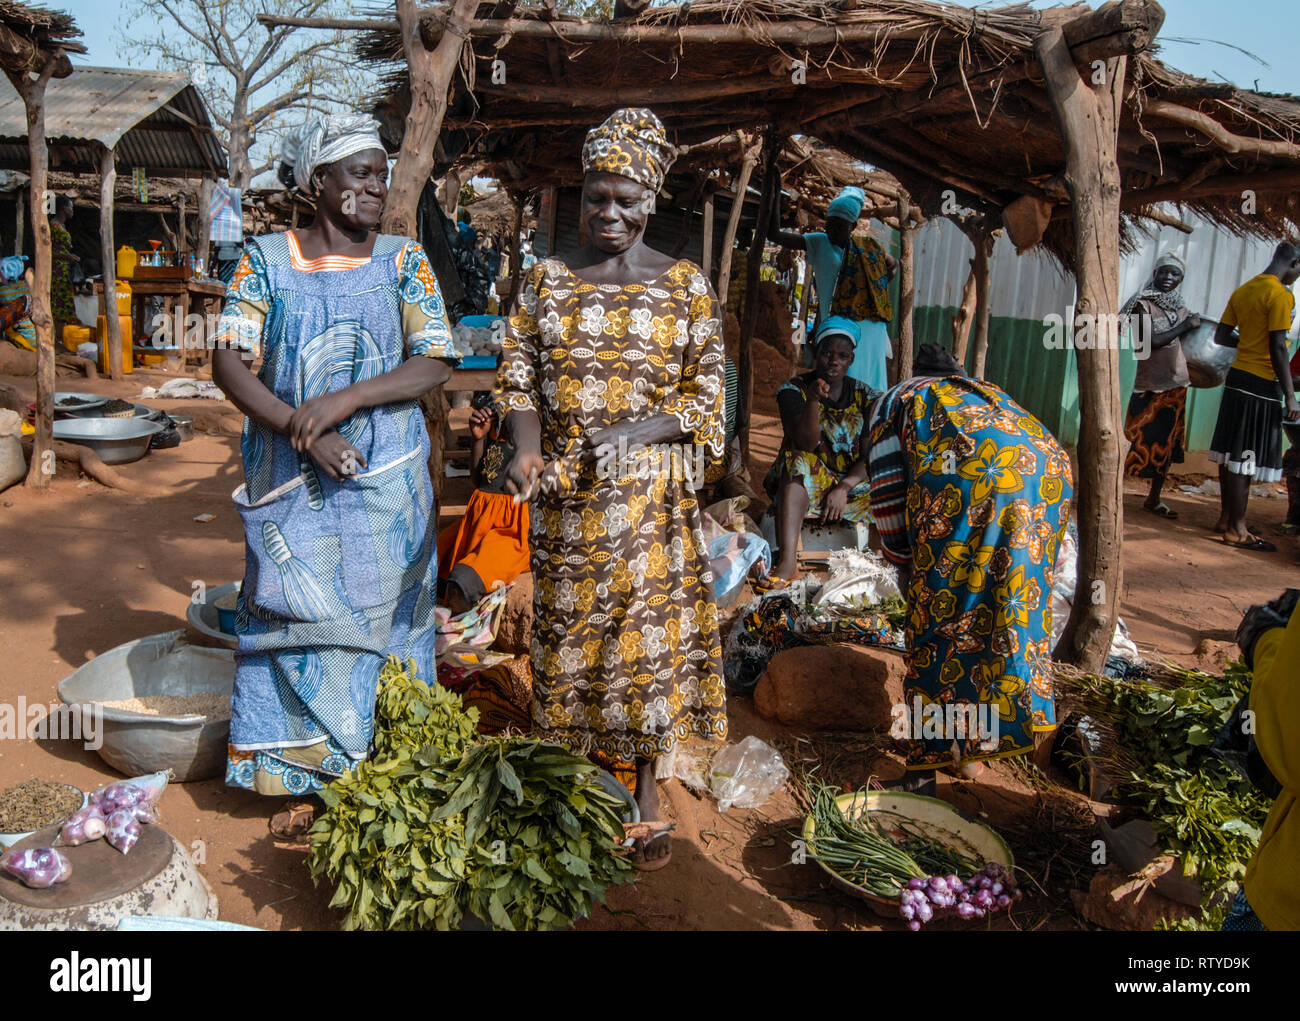 Une belle photo de deux belles femmes ghanéennes portant des vêtements traditionnels pour vendre des légumes et épices à l'échelle locale des produits frais du marché dans village Kongo. Banque D'Images